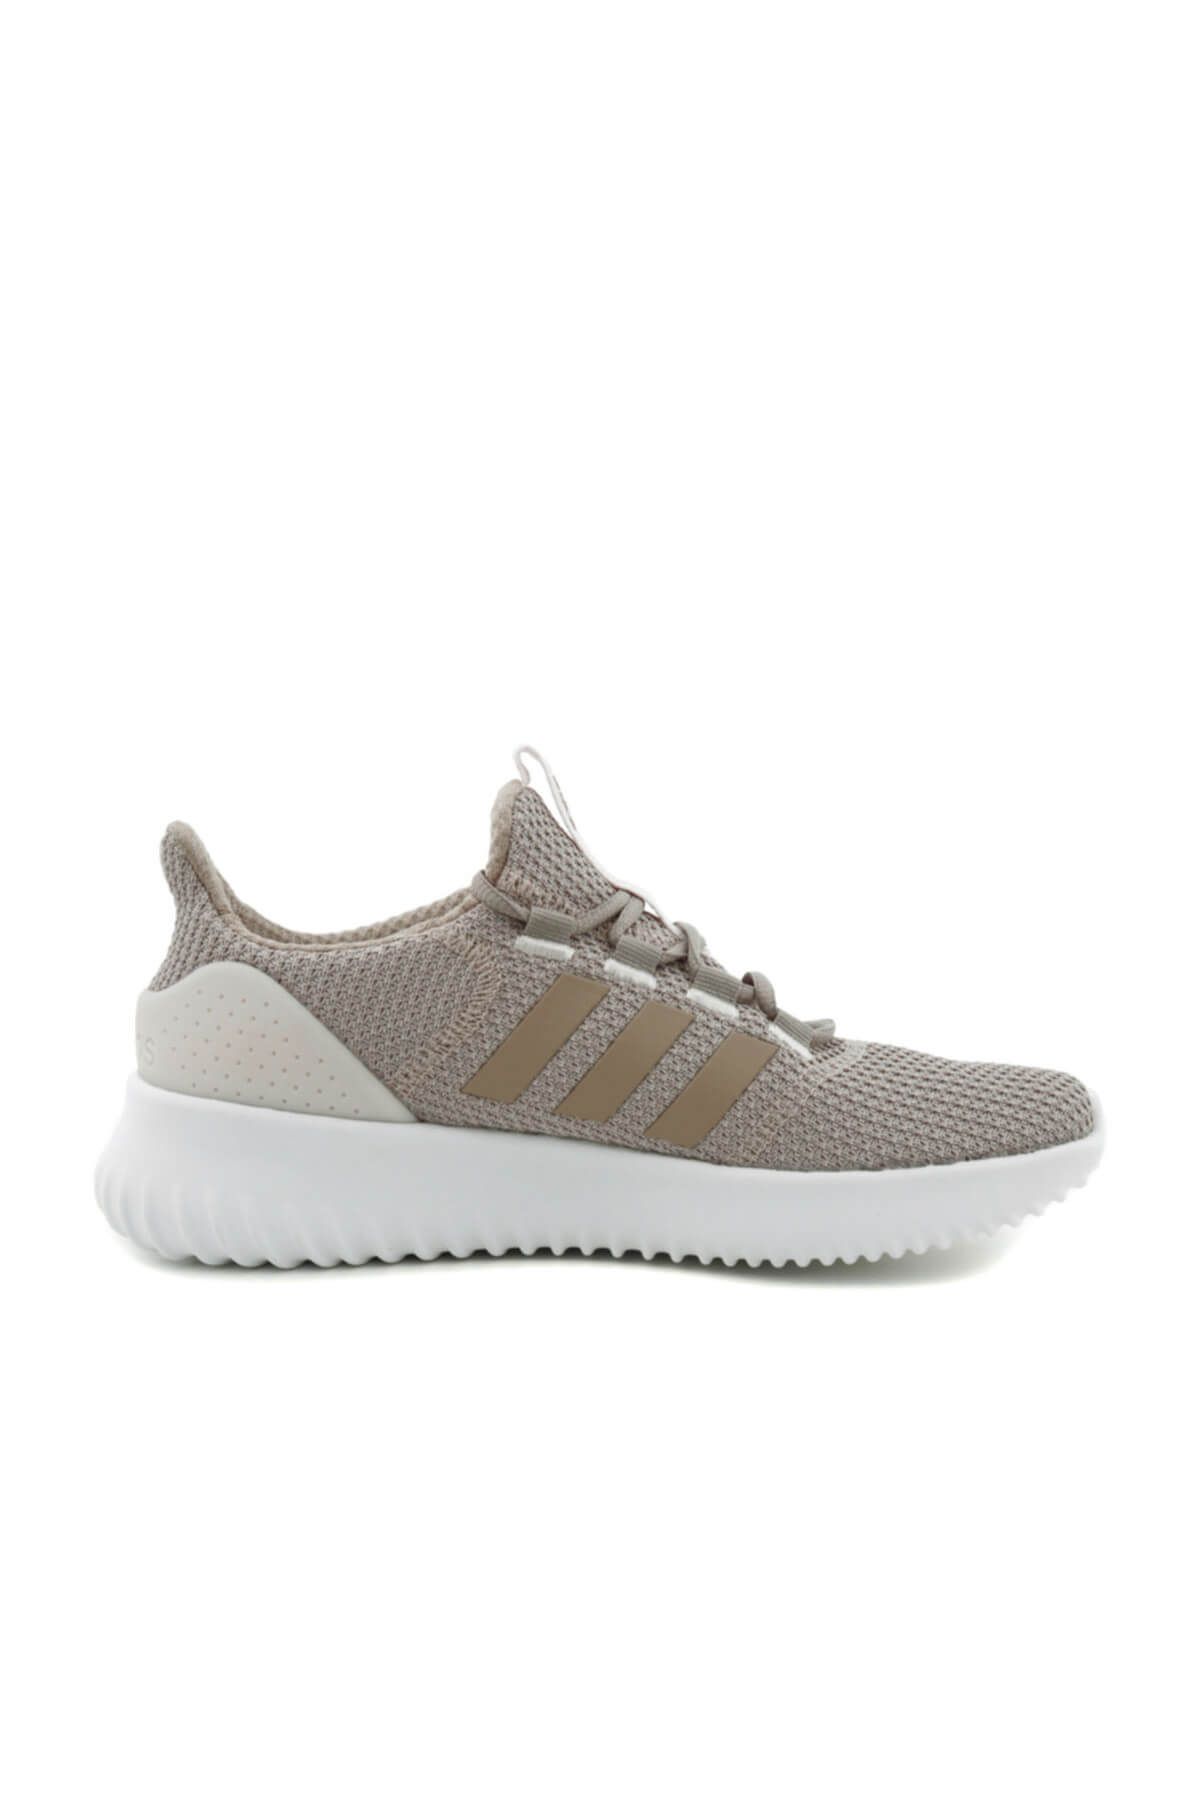 adidas Kadın Koşu & Antrenman Ayakkabısı - Cloudfoam Ultımate Koşu Ayakkabısı - DB0452